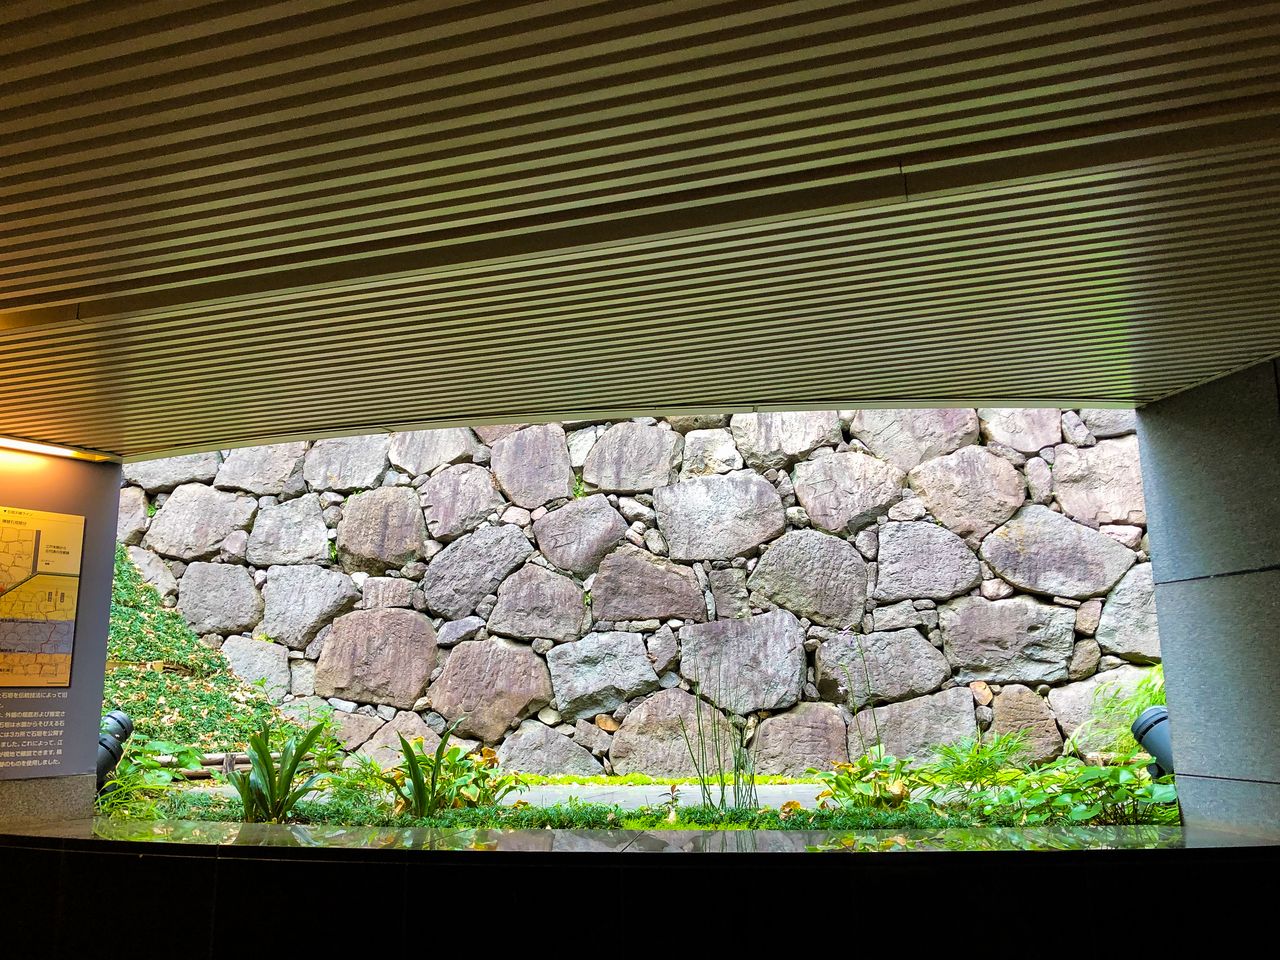 Каменная стена внешнего рва замка Эдо, сохранившаяся на территории Министерства образования, культуры, спорта, науки и технологий (PIXTA)